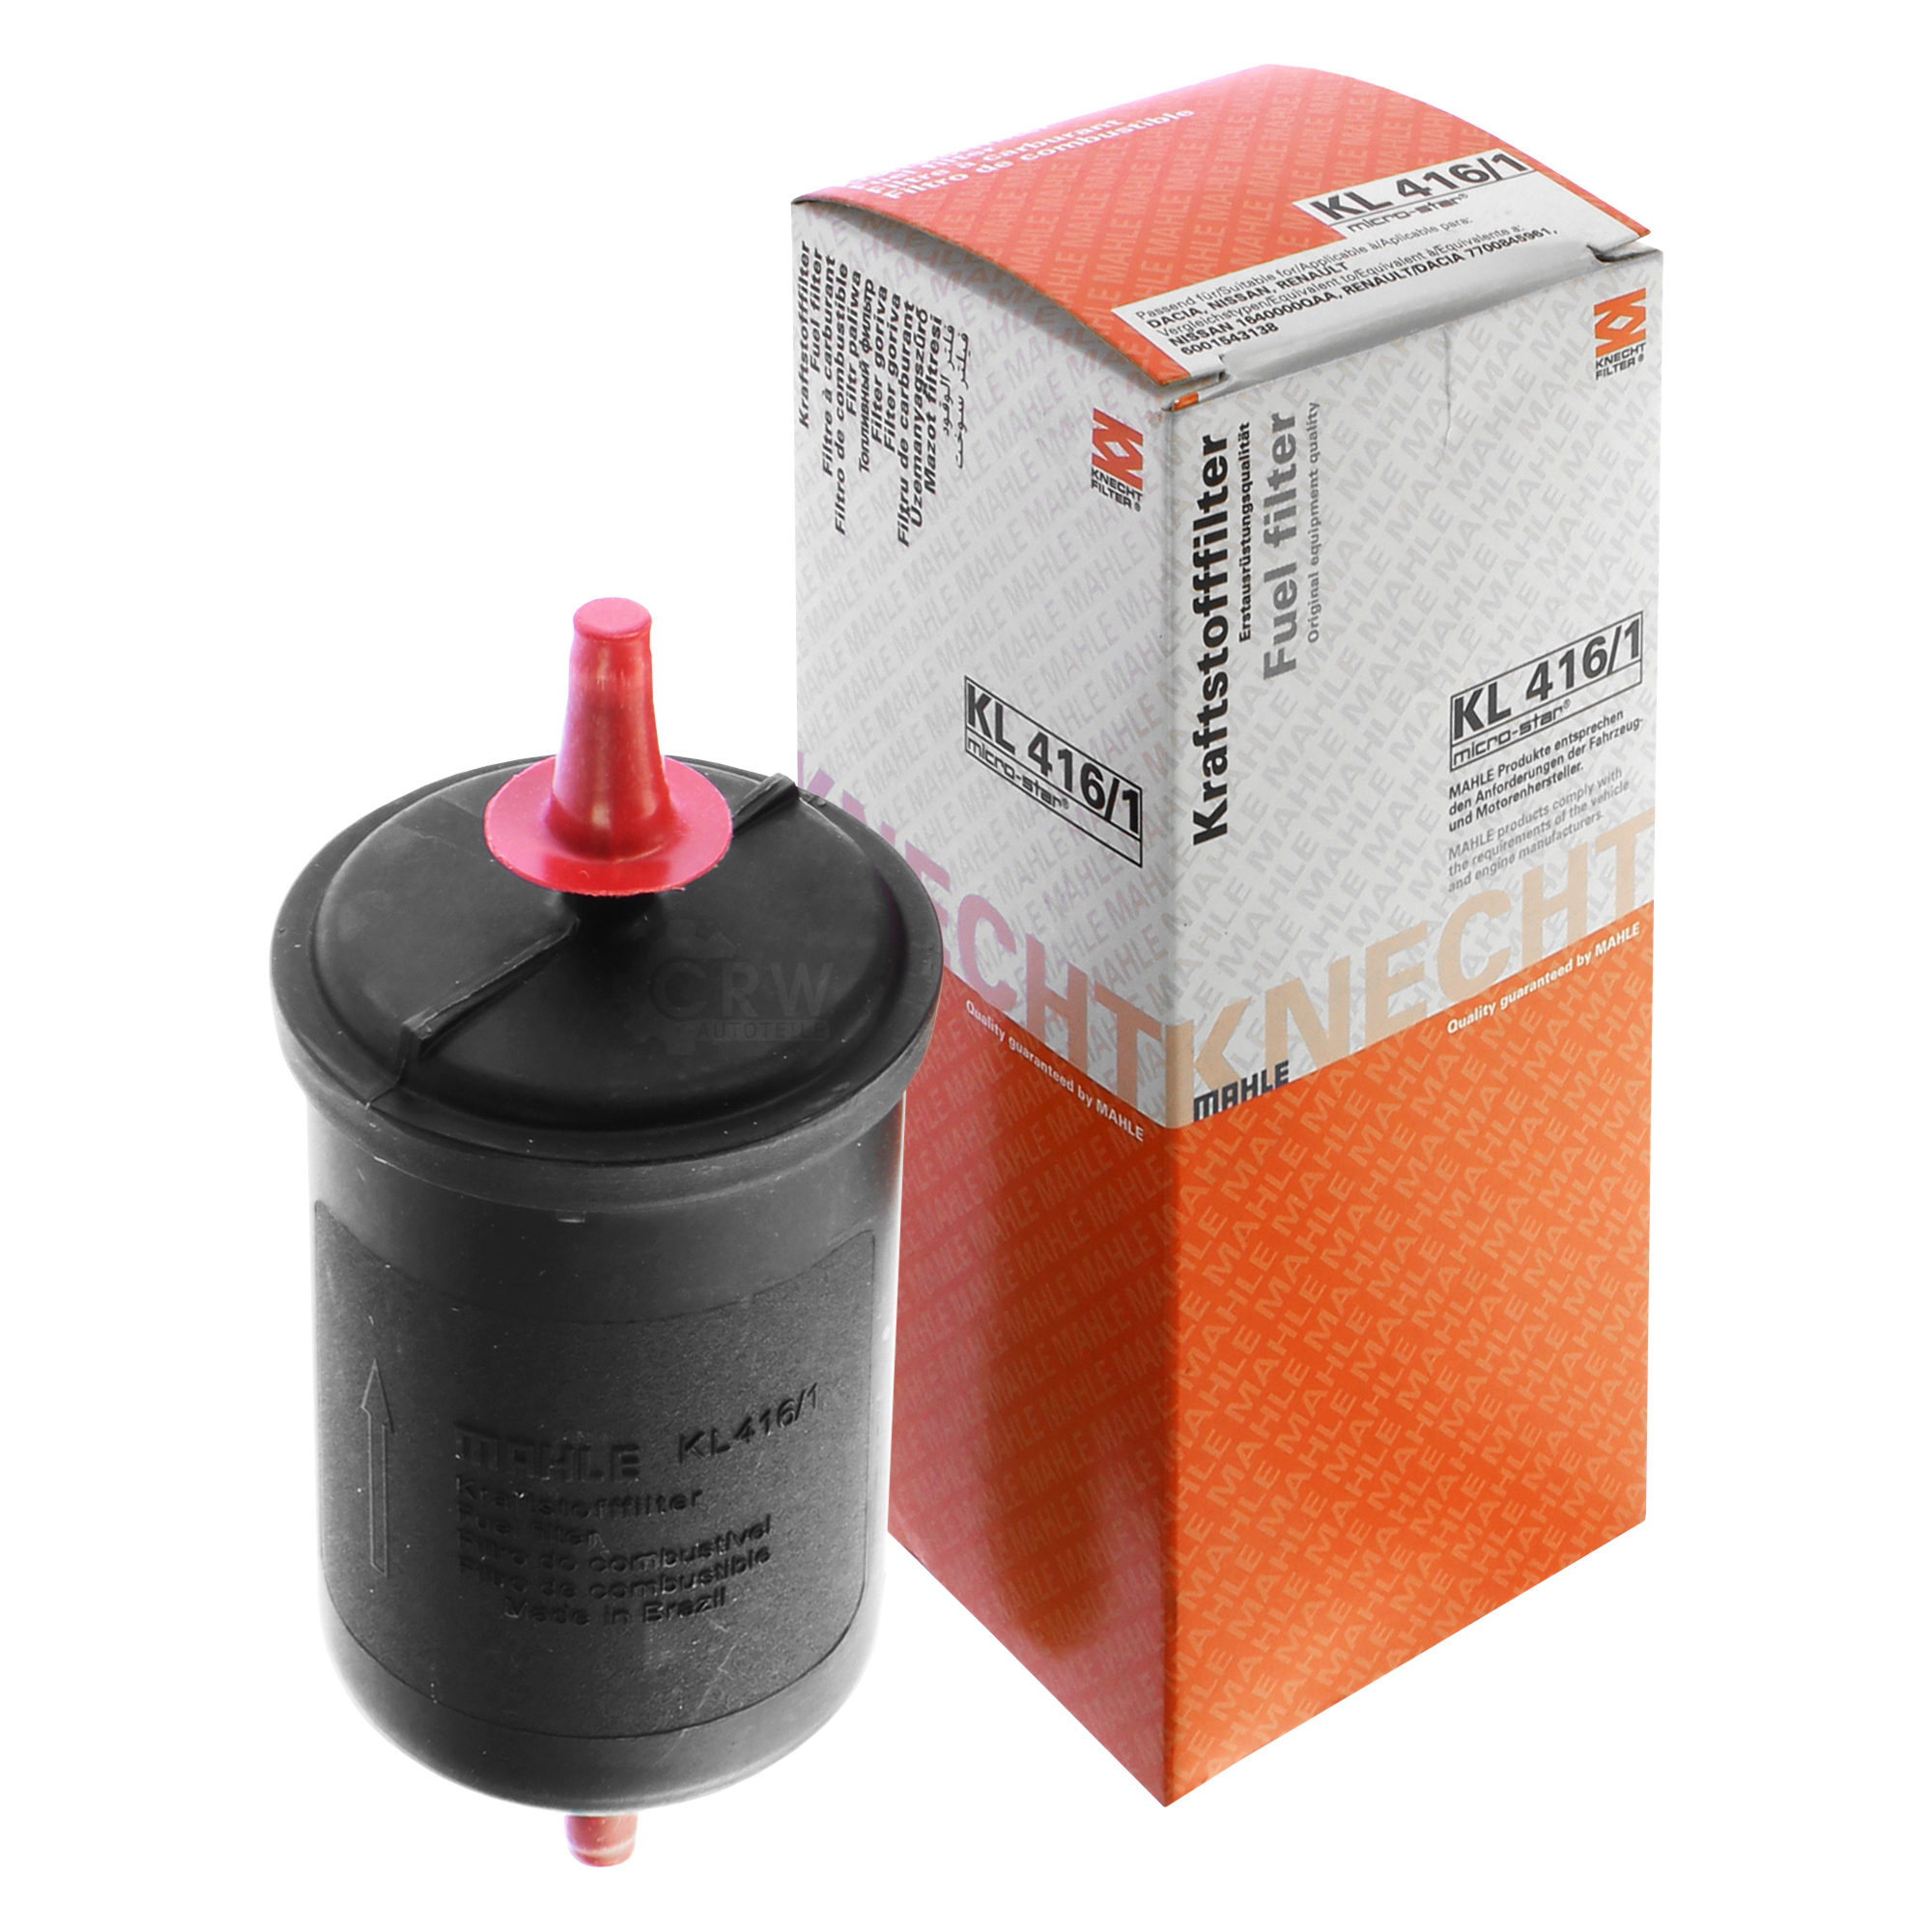 MAHLE / KNECHT Kraftstofffilter KL 416/1 Fuel Filter